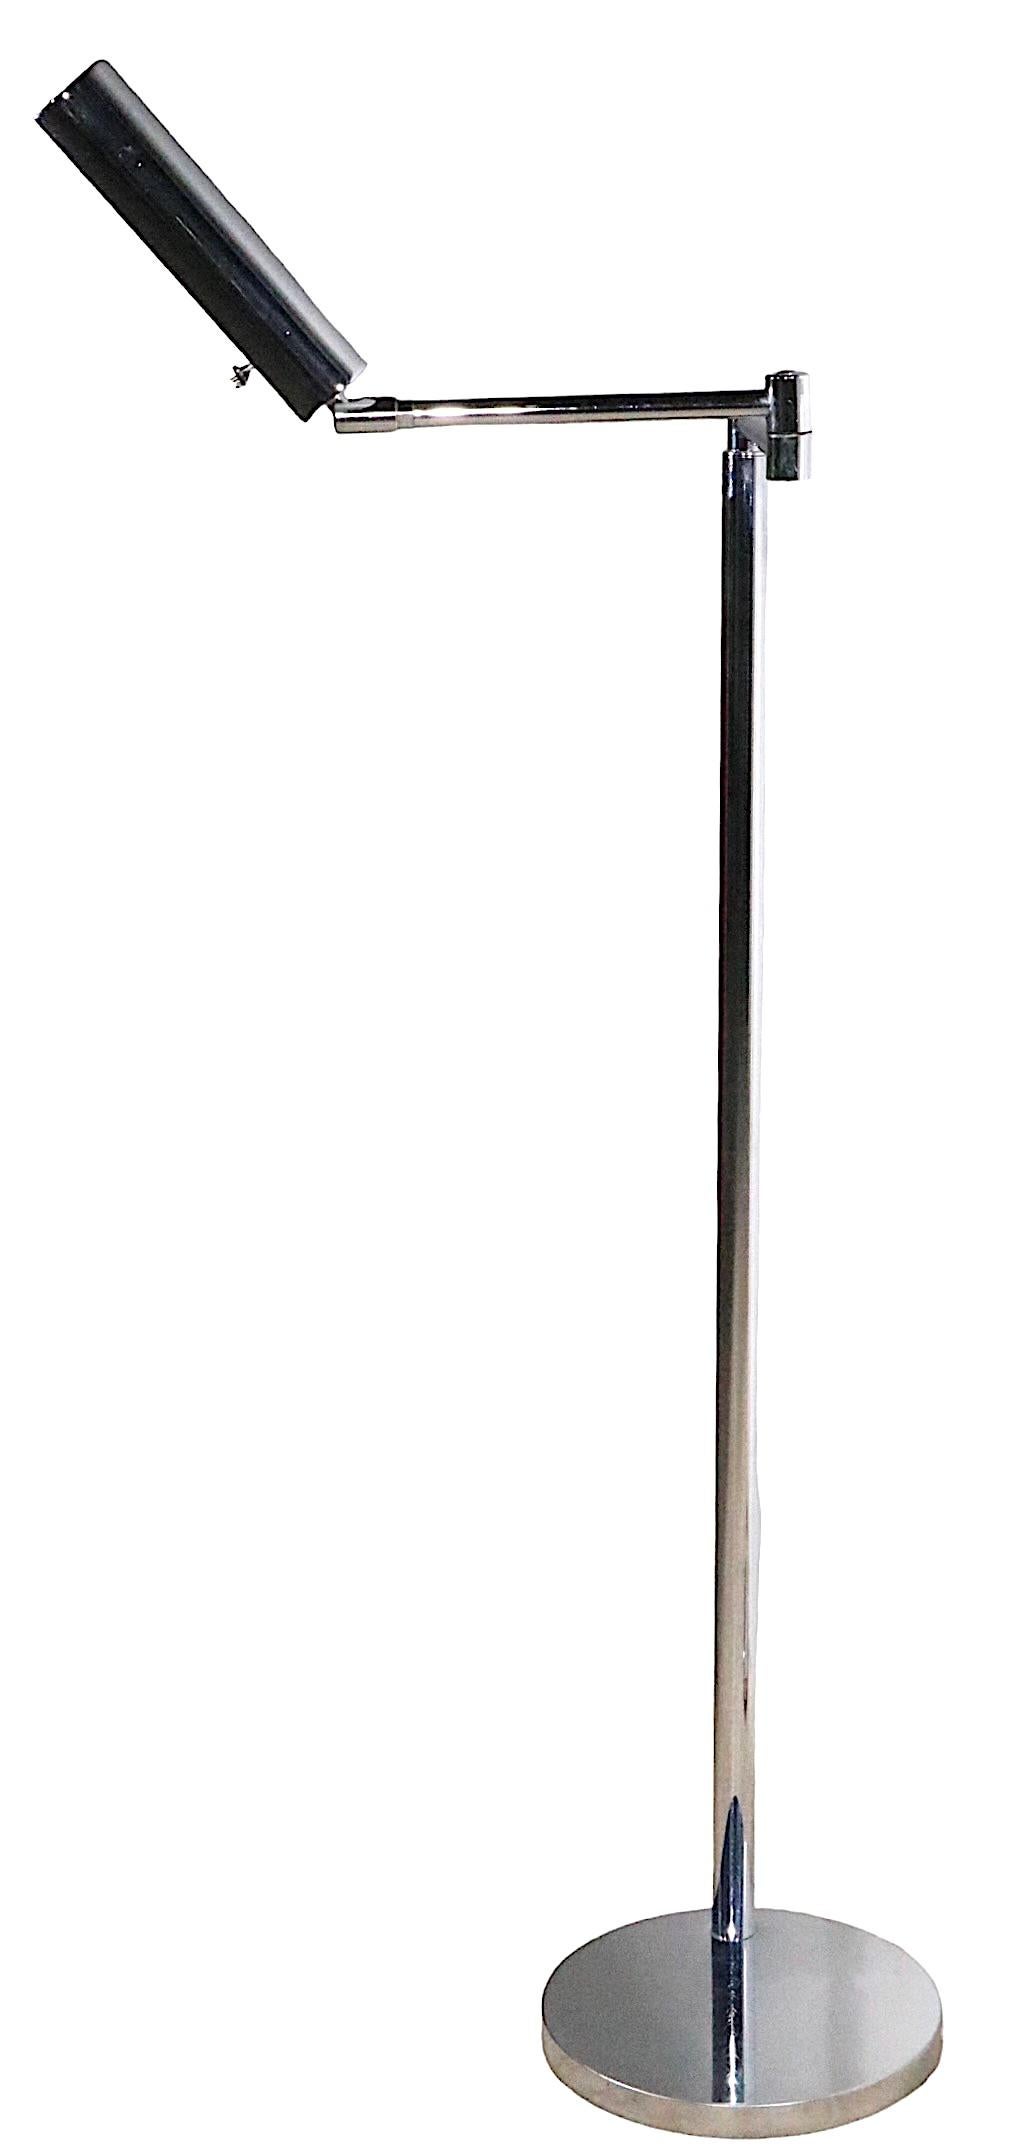 Schickes Paar glänzend verchromter Apothekerlampen des bekannten Herstellers Koch & Lowy, gekennzeichnet mit OMI. Die Lampen sind in der Höhe verstellbar  ( 40,5 - 50 Zoll  ) - der Schirm der Haube lässt sich neigen und die Arme schwenken, um die